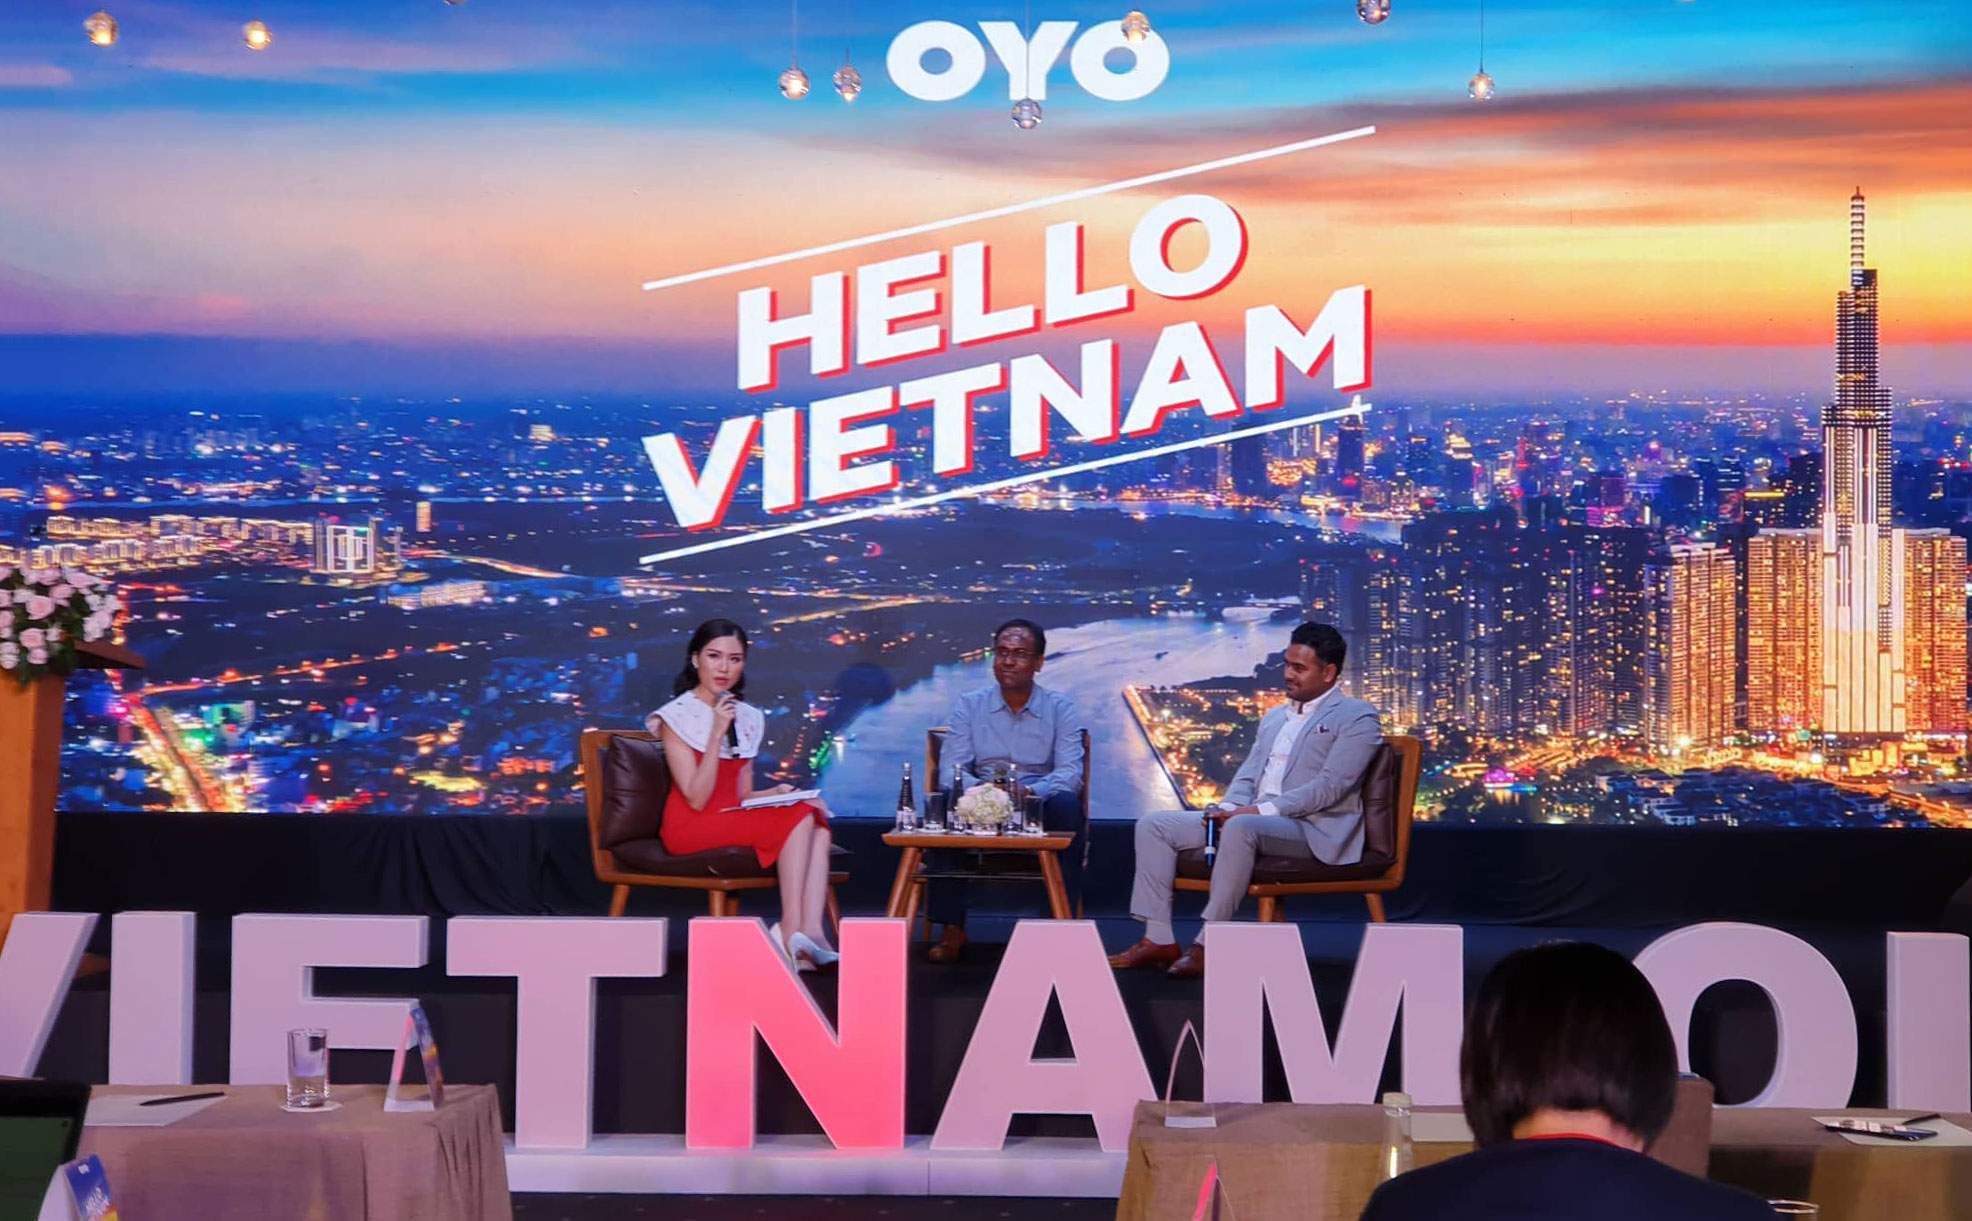 Chuỗi khách sạn nhượng quyền trực tuyến OYO ra mắt tại VN: 90 khách sạn tại 6 thành phố lớn